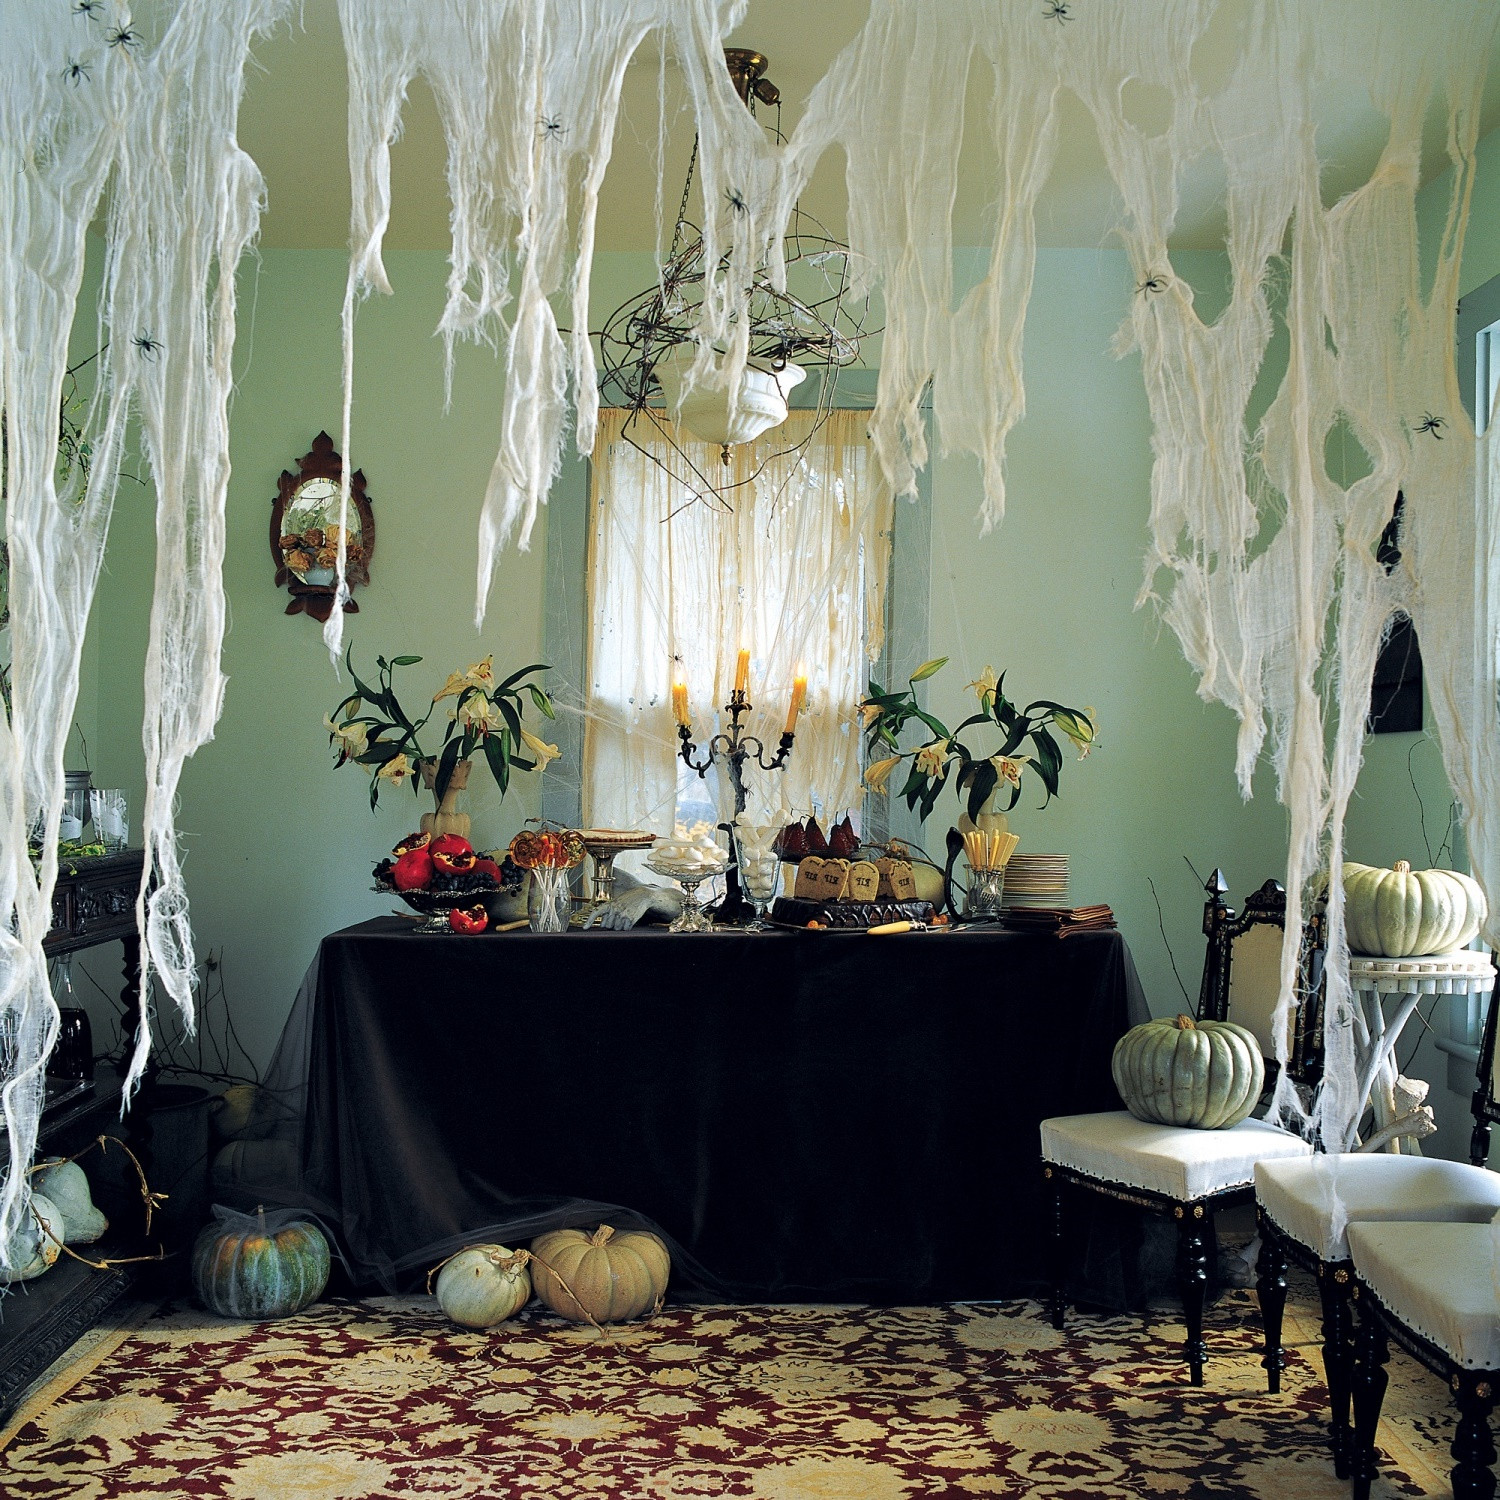 Halloween Indoor Decorations
 CREATIVE HANDMADE INDOOR HALLOWEEN DECORATIONS